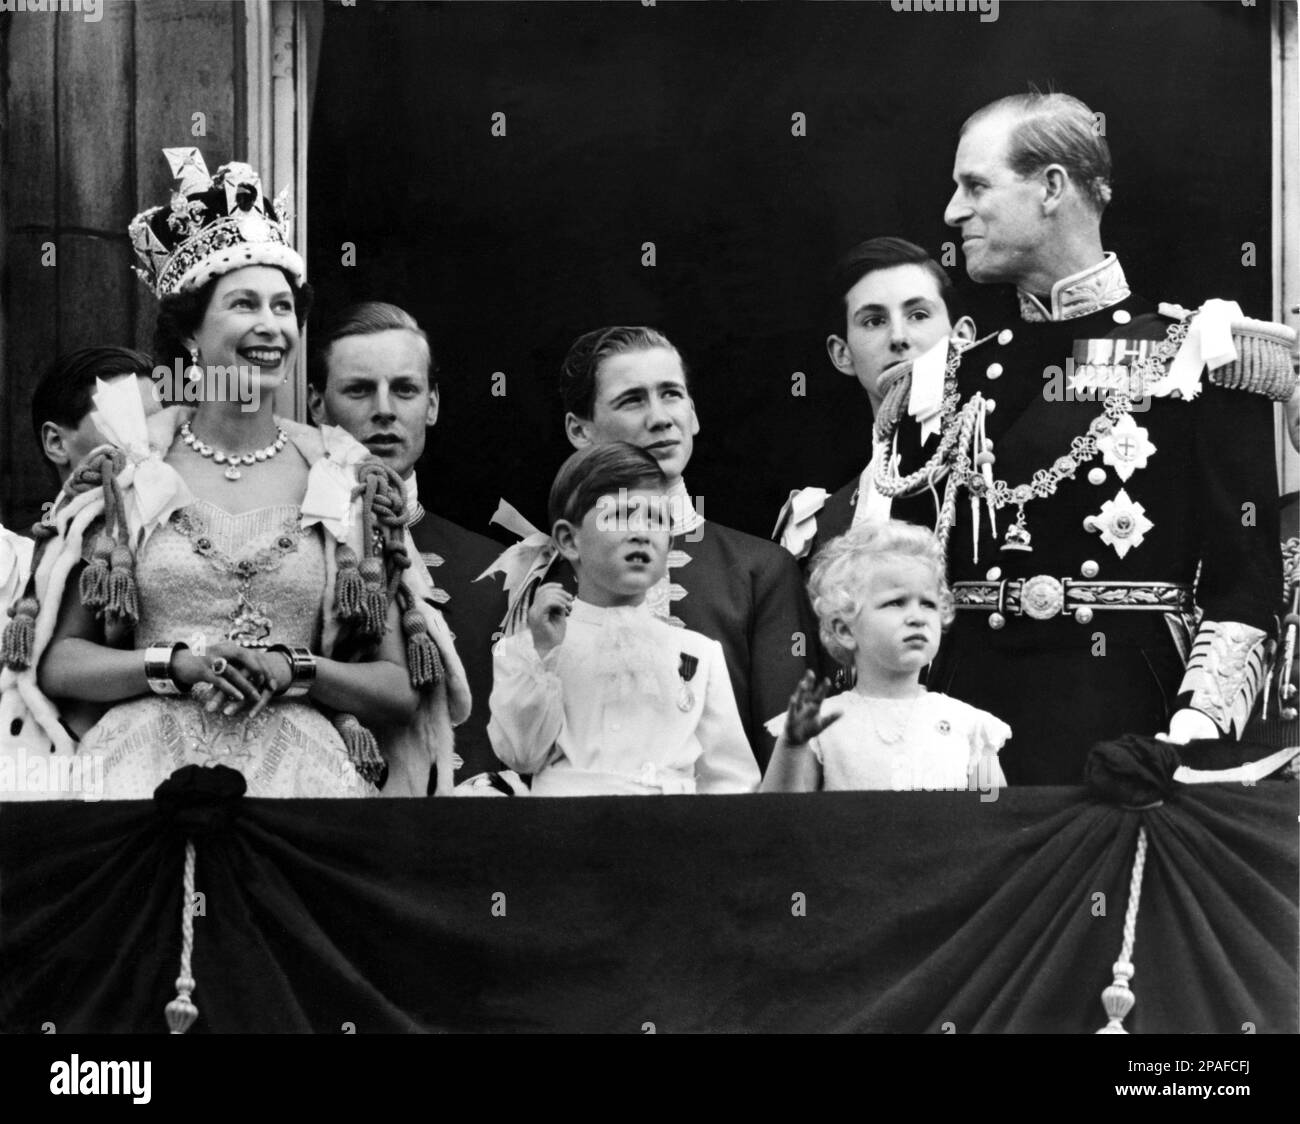 1953, 2 giugno , Buckingham Palace , Londra , Inghilterra : il giorno dell'incoronazione della Regina ELISABETTA II d'Inghilterra ( nata nel 1926 ). In questa foto con il principe PHILIP Mountbatten Duca DI EDIMBURGO ( 1921 ), il principe CARLO di Galles (1948 ) e la principessa Royal ANNE ( 1950 ). In background il figlio di Duca e Duchesse Marina di KENT : EDWARD Duca di Kent e principe MICHELE di Kent - REALI - ROYALTY - nobili - Nobiltà - nobiltà - GRAND BRETAGNA - GRAN BRETAGNA - INGHILTERRA - REGINA - WINDSOR - Casa di Saxe-Coburg-Gotha - celebrità personalità personalità personalitie Foto Stock